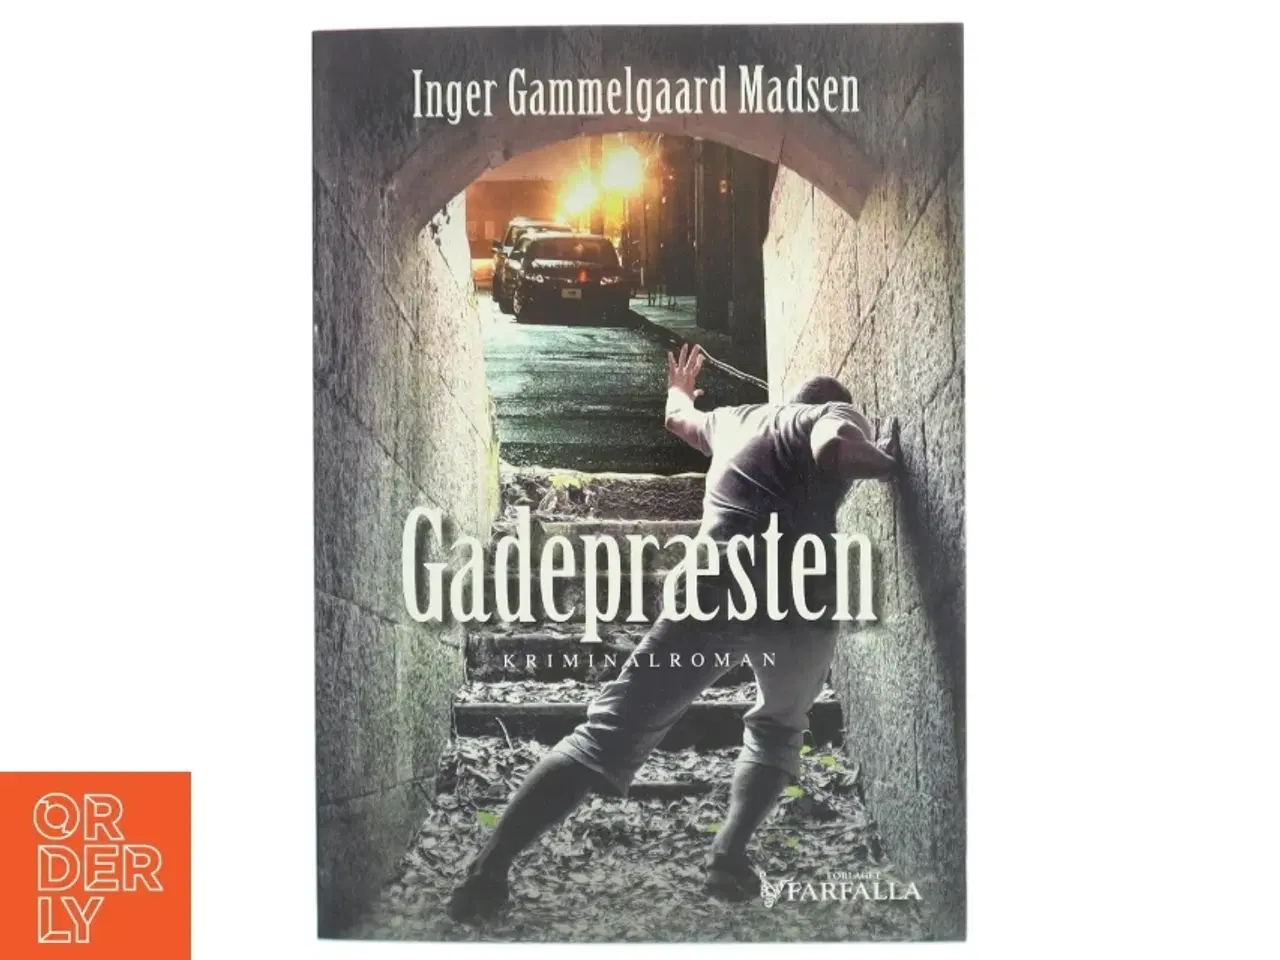 Billede 1 - 'Gadepræsten: kriminalroman' af Inger Gammelgaard Madsen (bog)